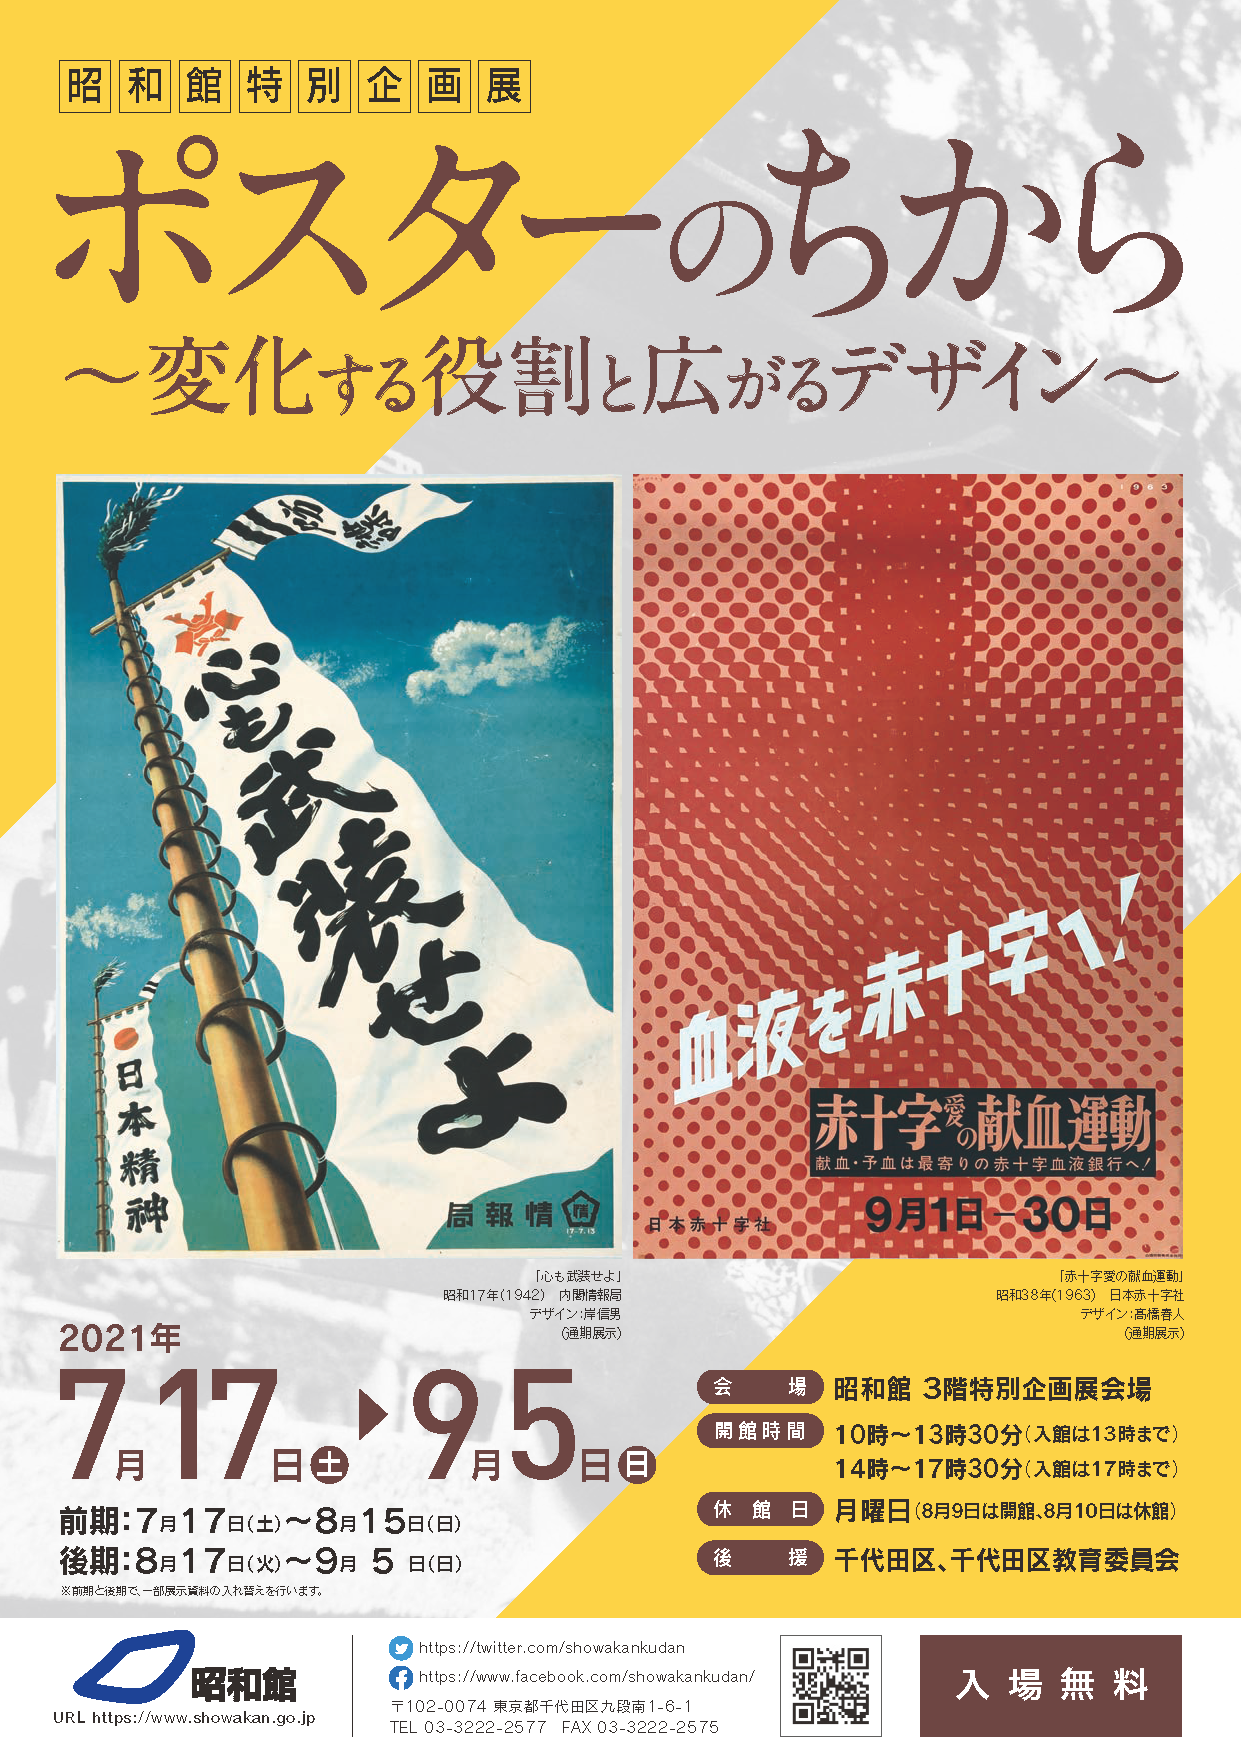 「魔法の手 ロッカクアヤコ作品展」展覧会オフィシャルポスター